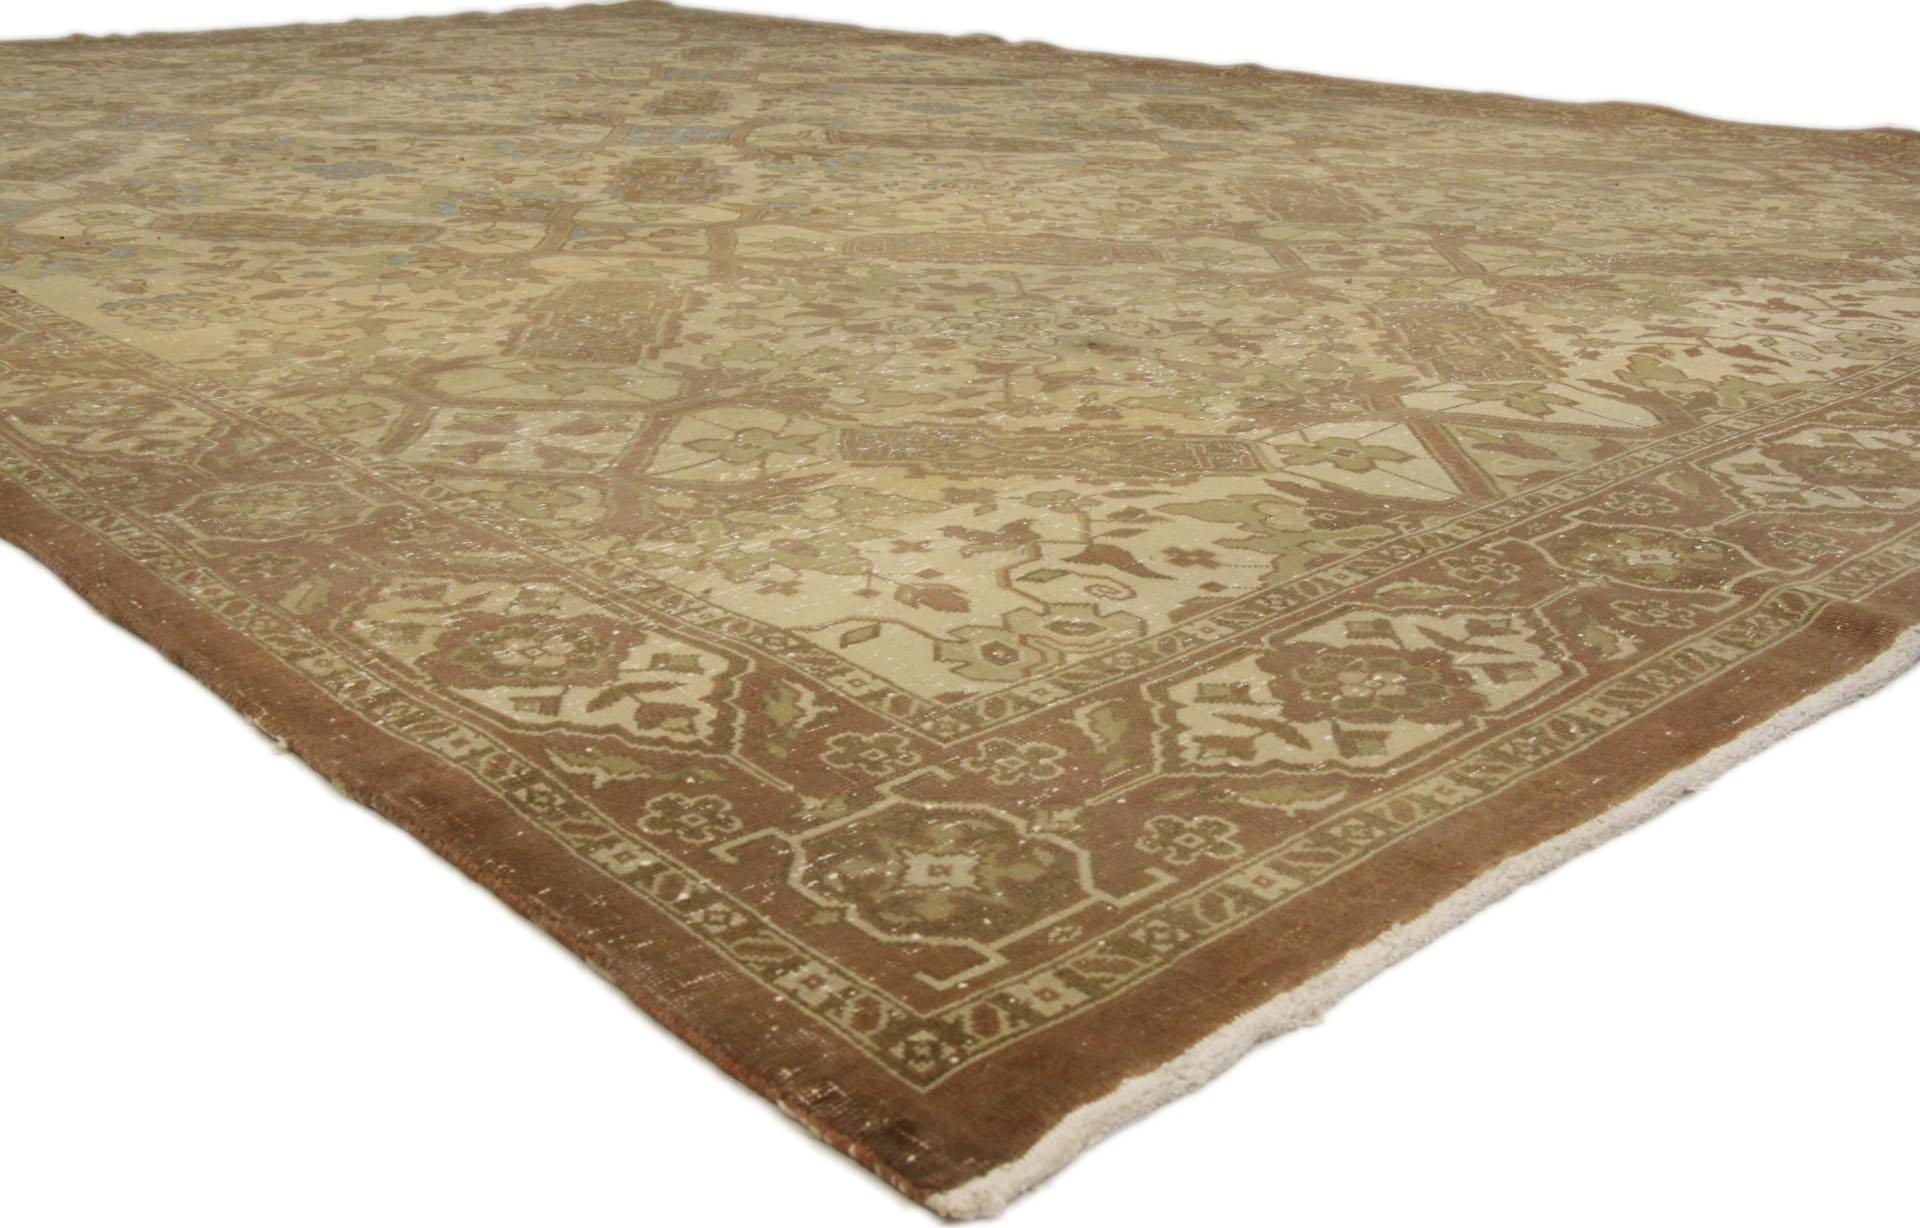 Chaleureux et accueillant avec une sensibilité rustique, ce tapis Tabriz persan ancien en laine noué à la main est prêt à impressionner. Le champ de couleur fauve, usé par le temps, présente un motif botanique sur toute sa surface, entouré d'une